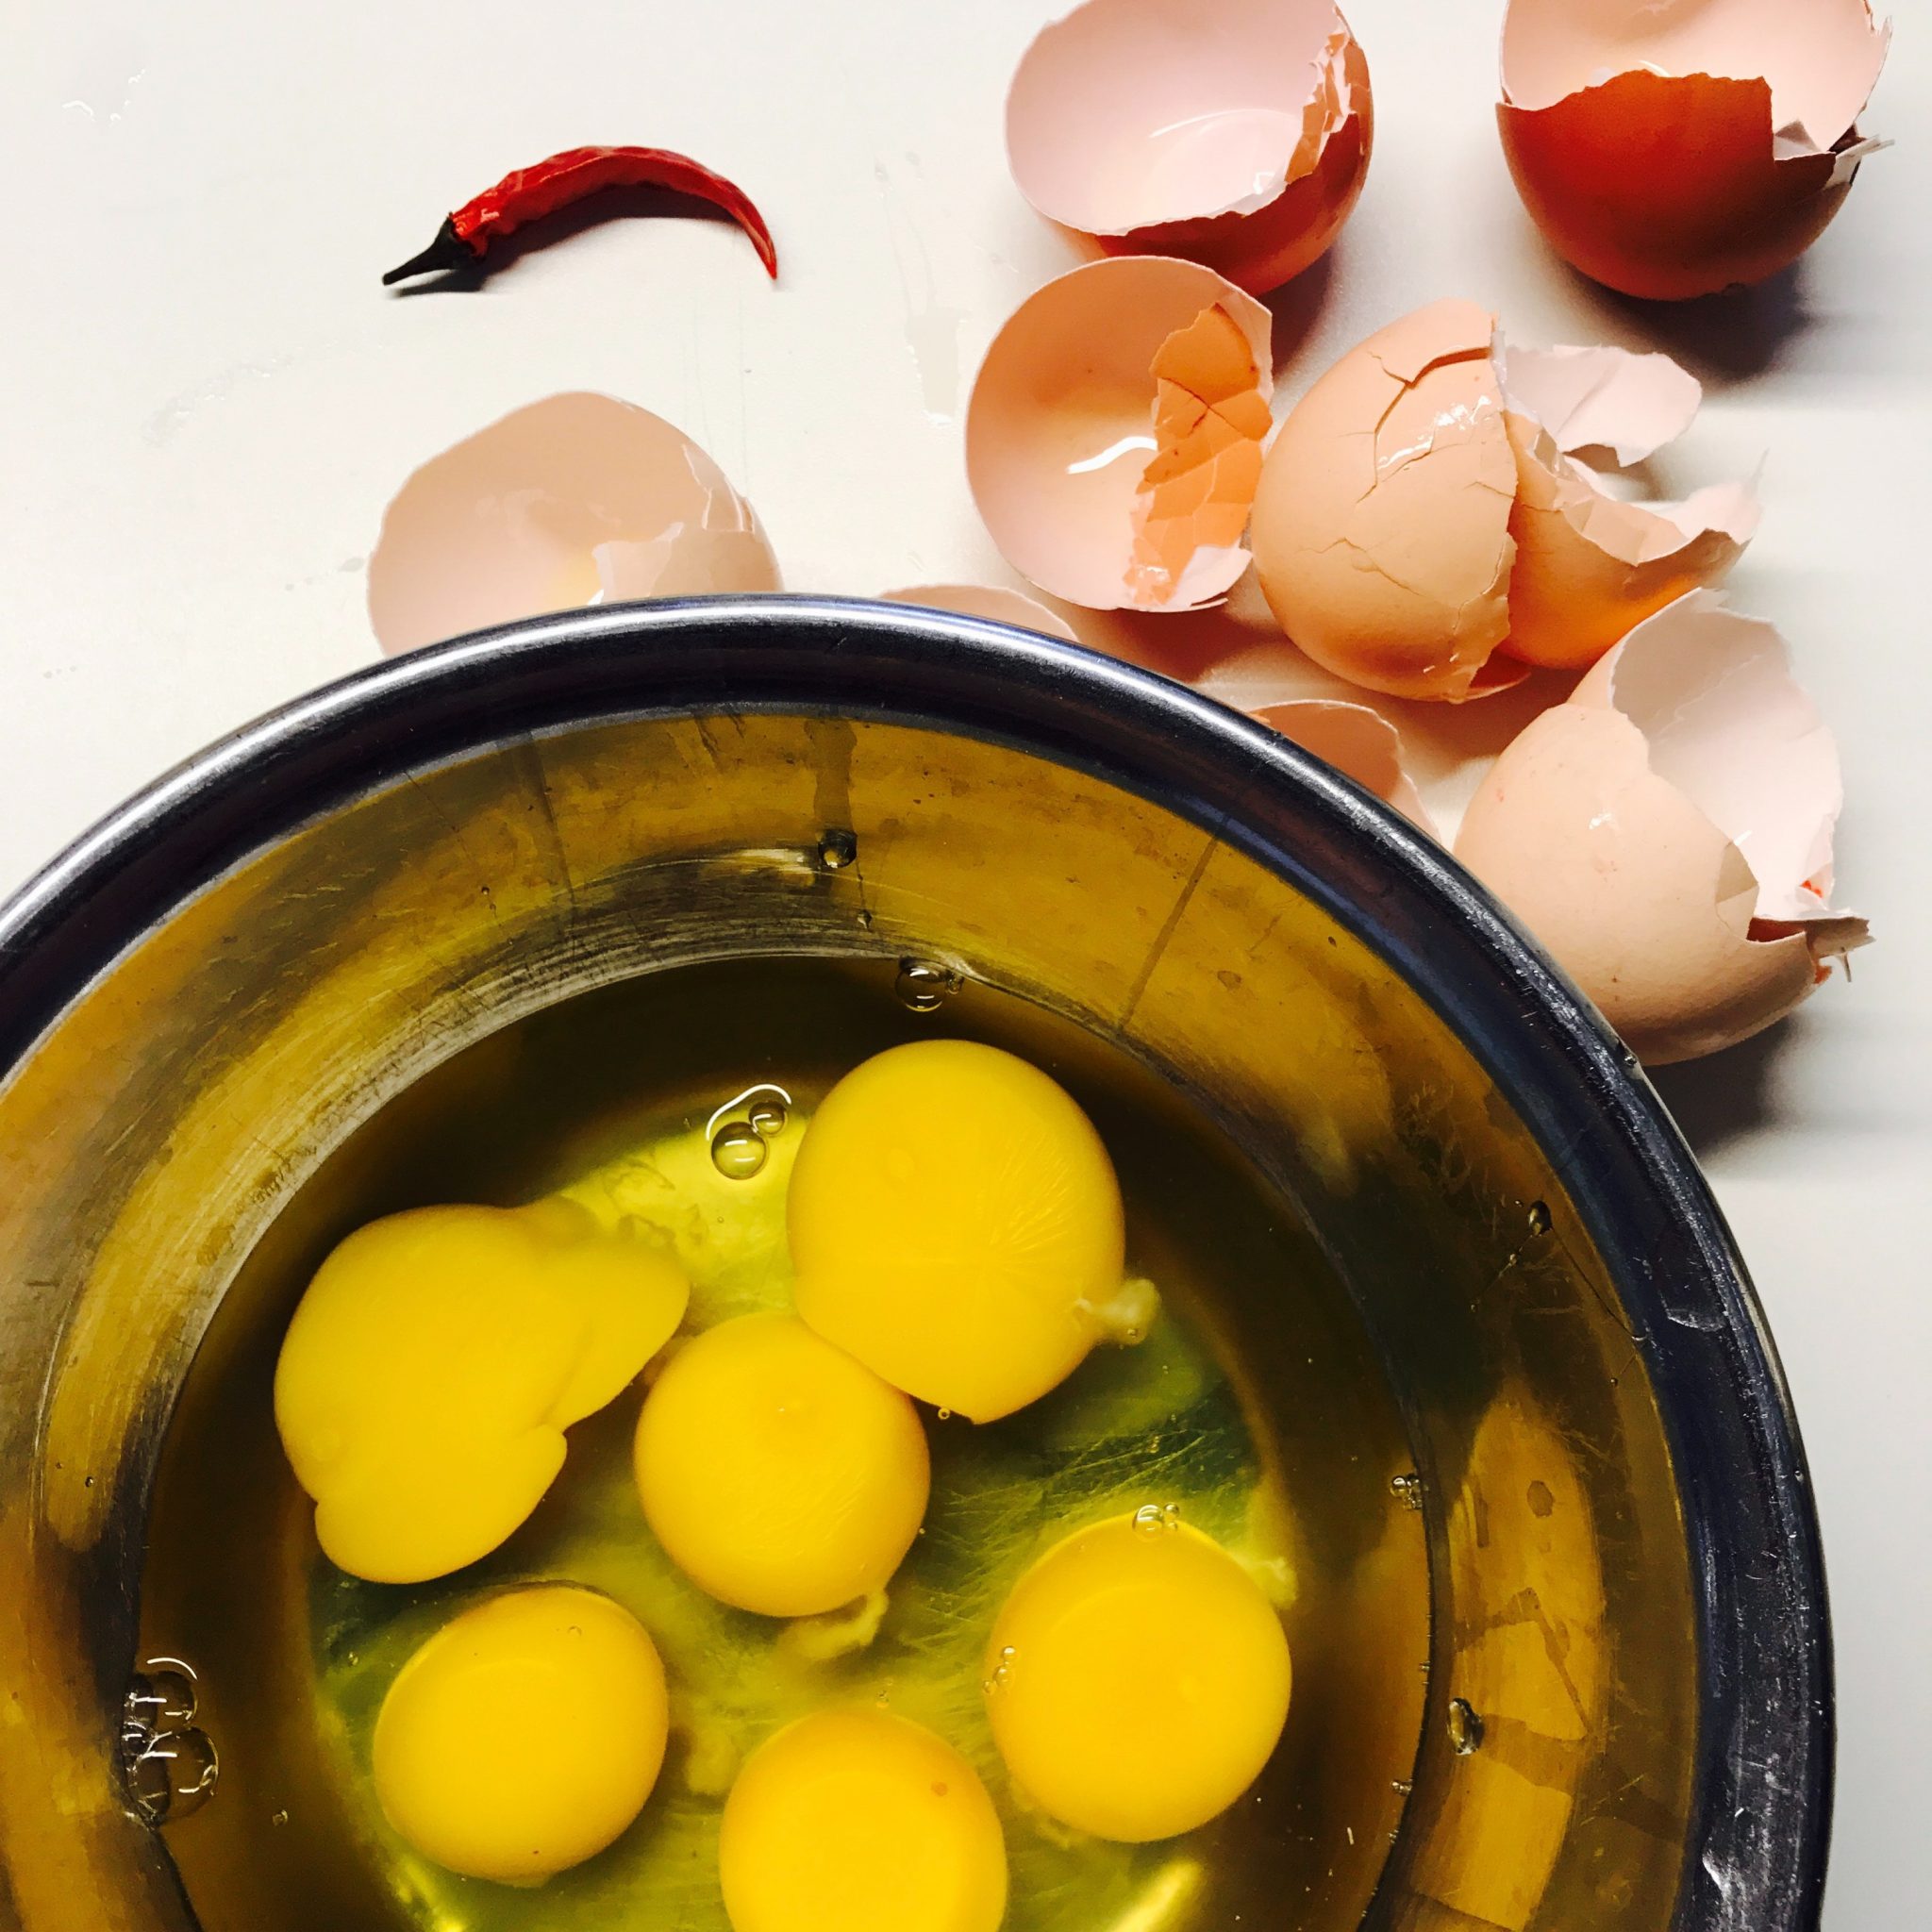 Detox Diet cracked eggs beside round blue bowl